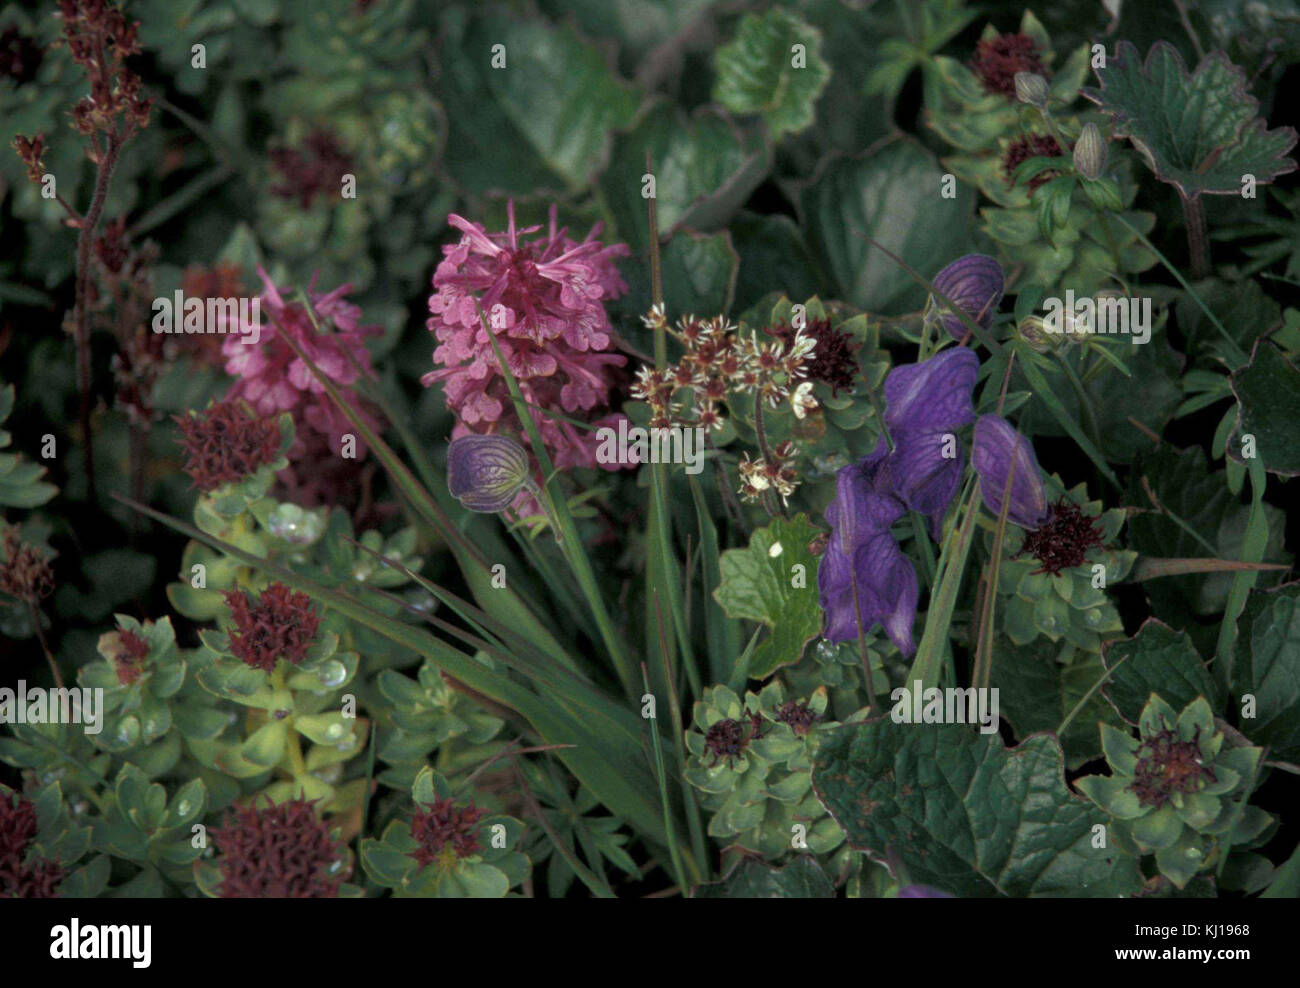 Monkshood flower aconitum delphinifolium and sedum rosea Stock Photo